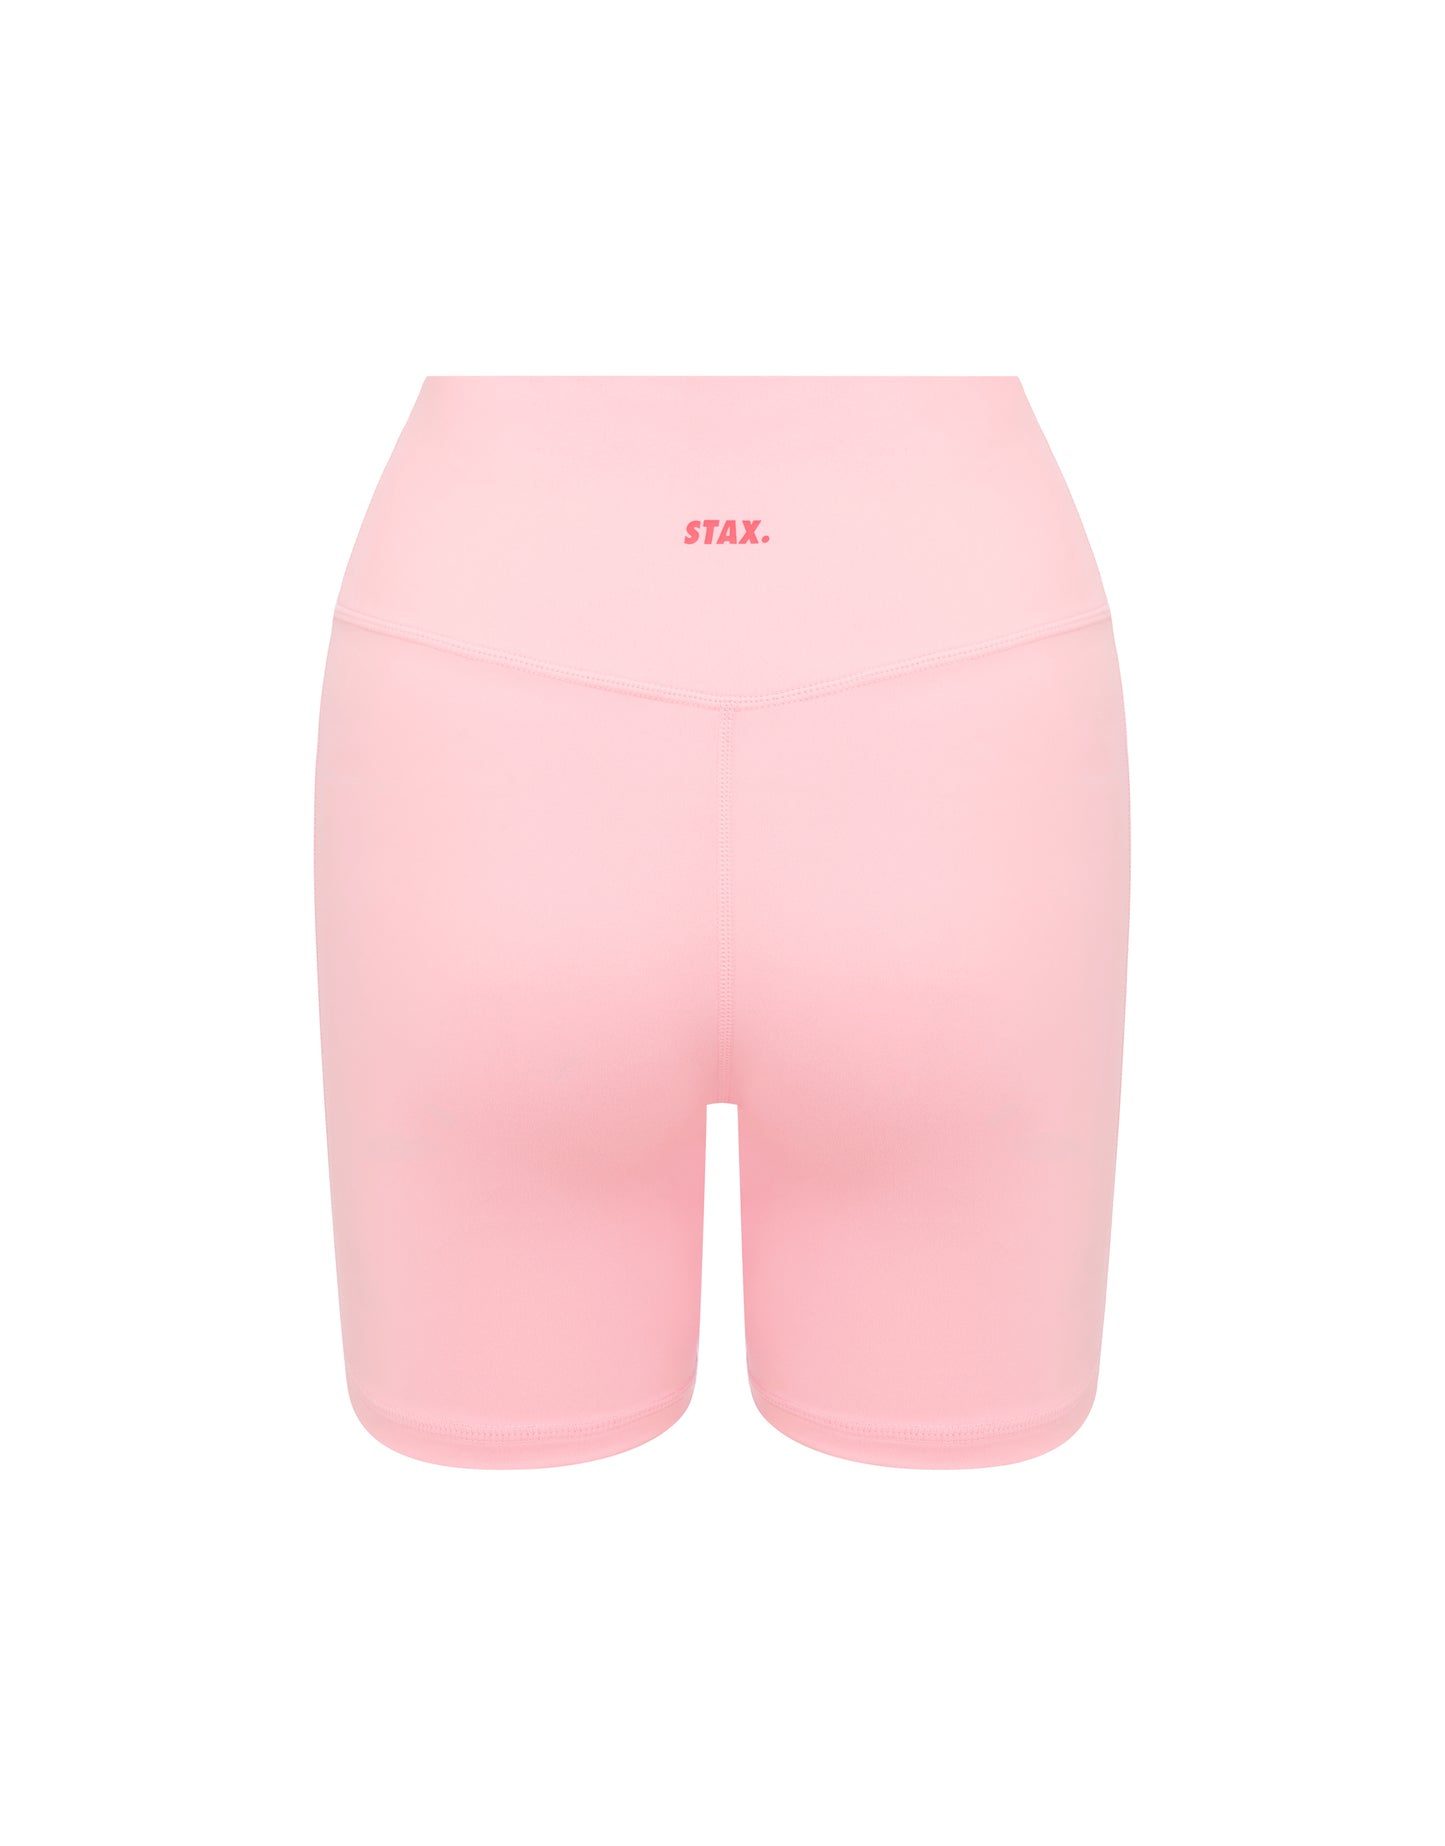 Kic Midi Bike Shorts - Light Pink